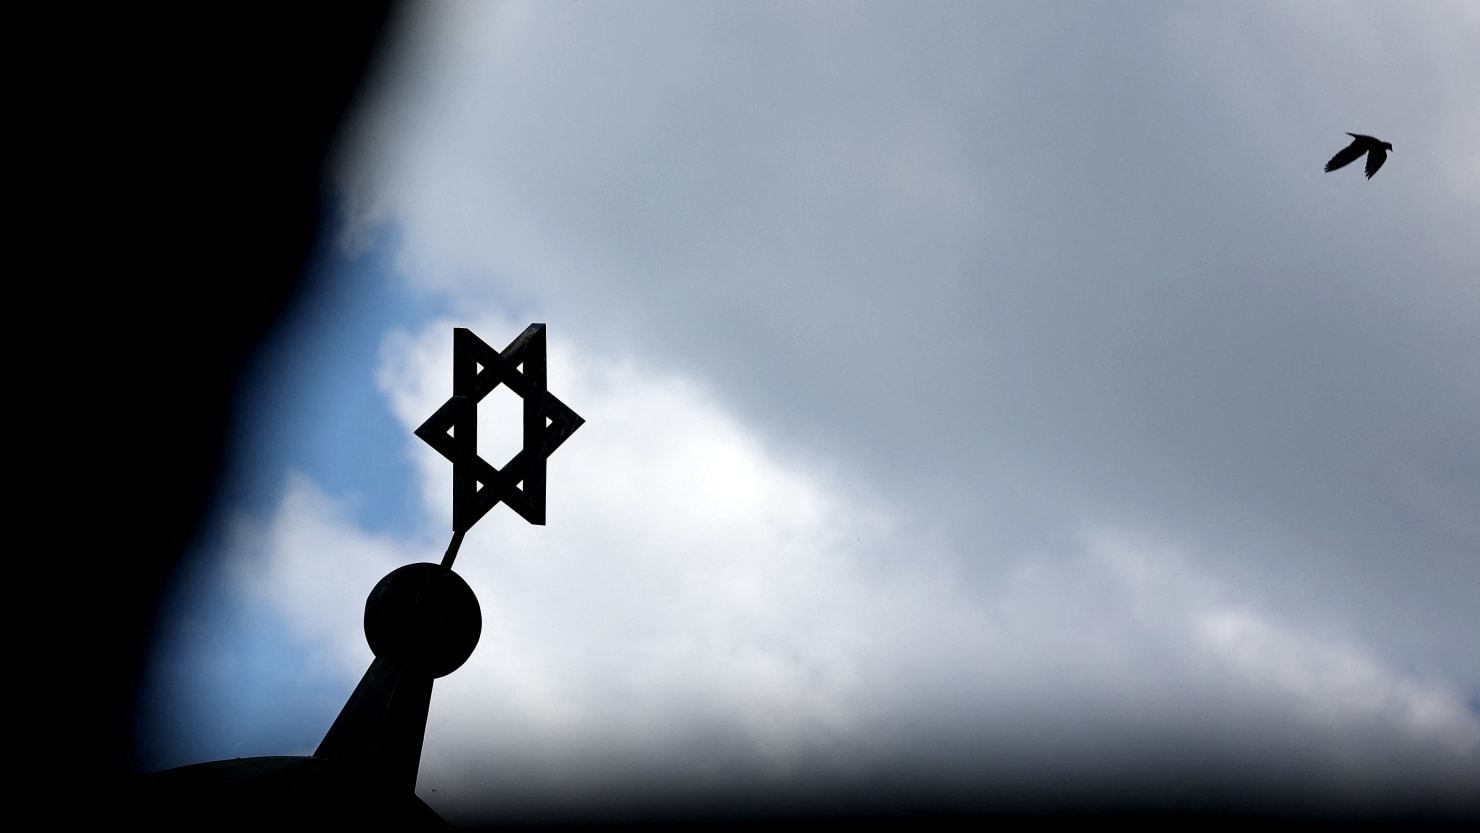 El hermano del pirómano de la sinagoga escondió mercancía nazi y huyó a Suecia, dice el FBI